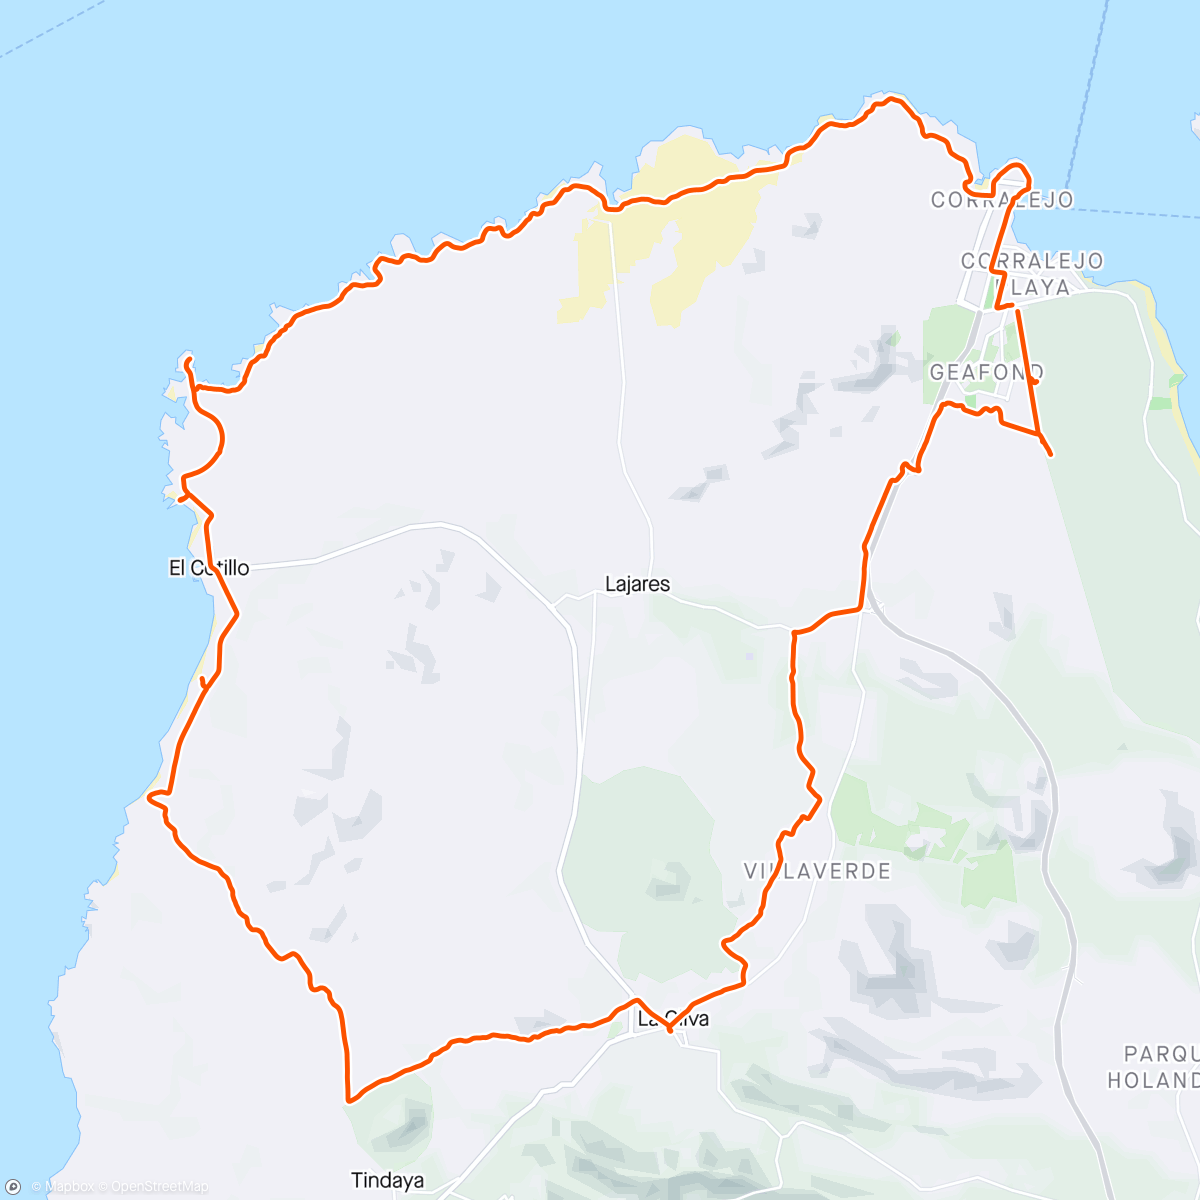 Map of the activity, Corralejo - Dunas de Corralejo - Capellanía - Villaverde - La Oliva - Playa de la Escalera - El Cotillo - Faro de Tostón - Majanicho - Corralejo